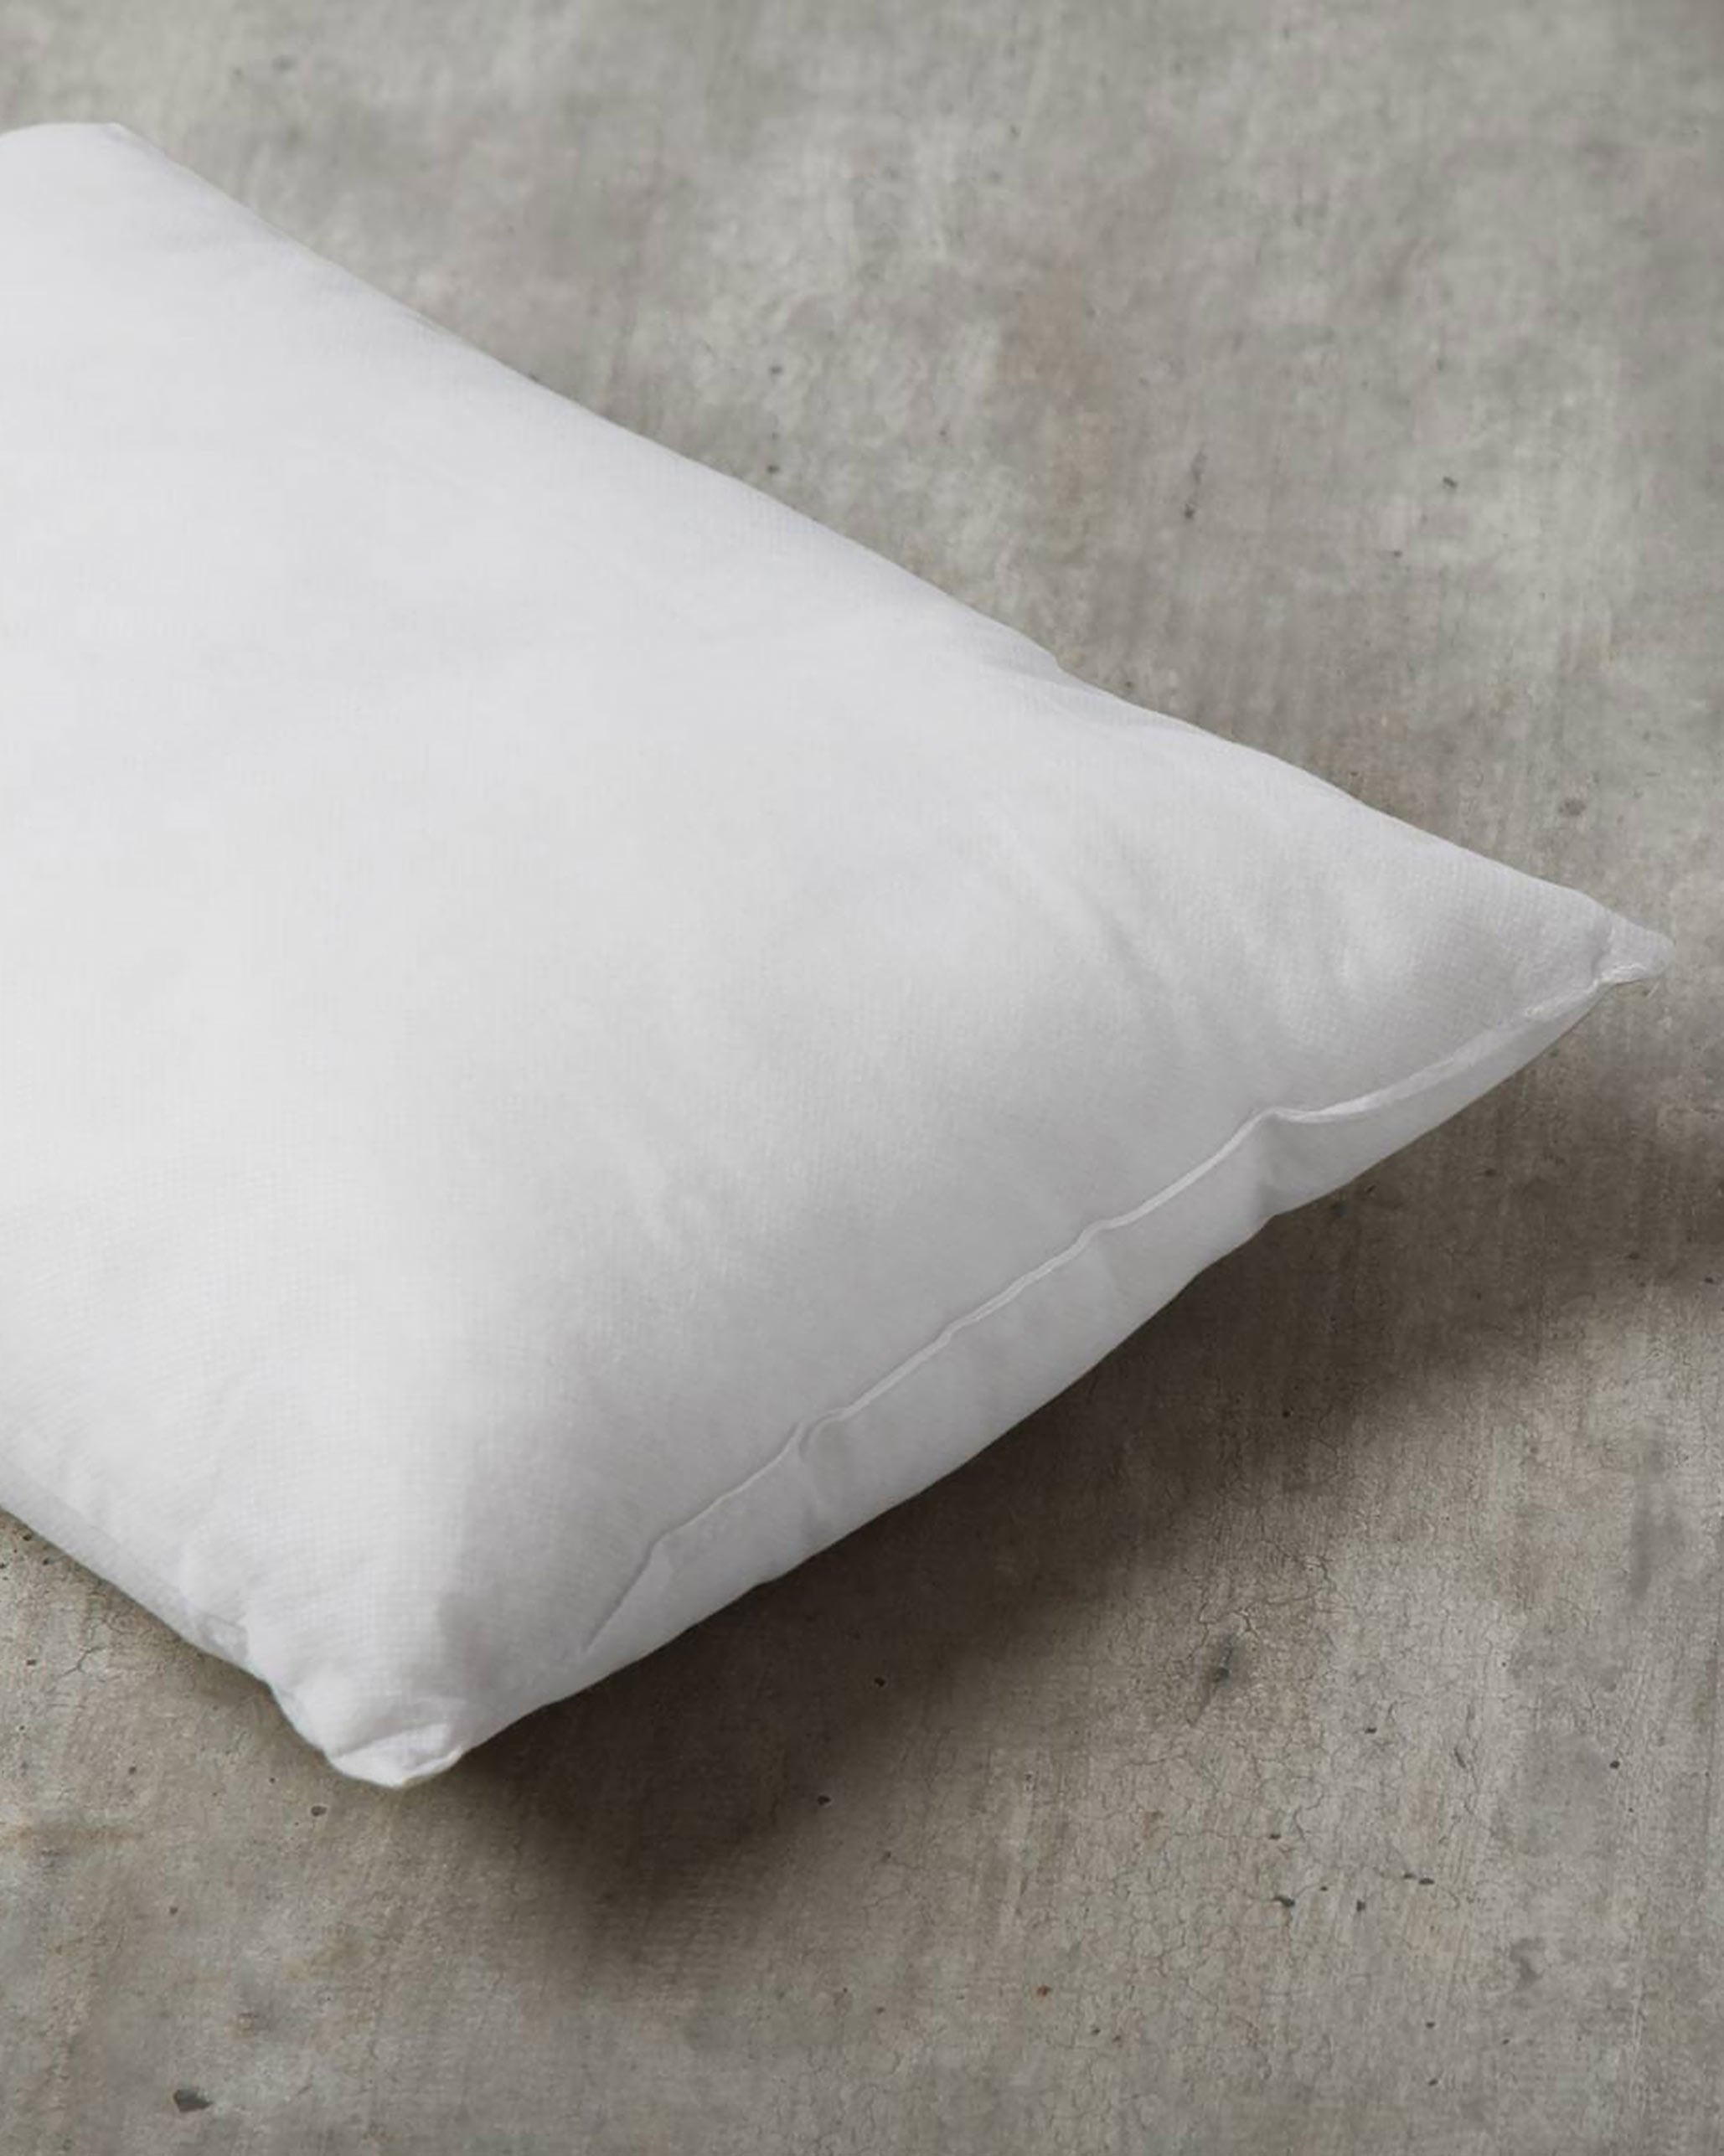 Pillow Filler 36 x 51 cm